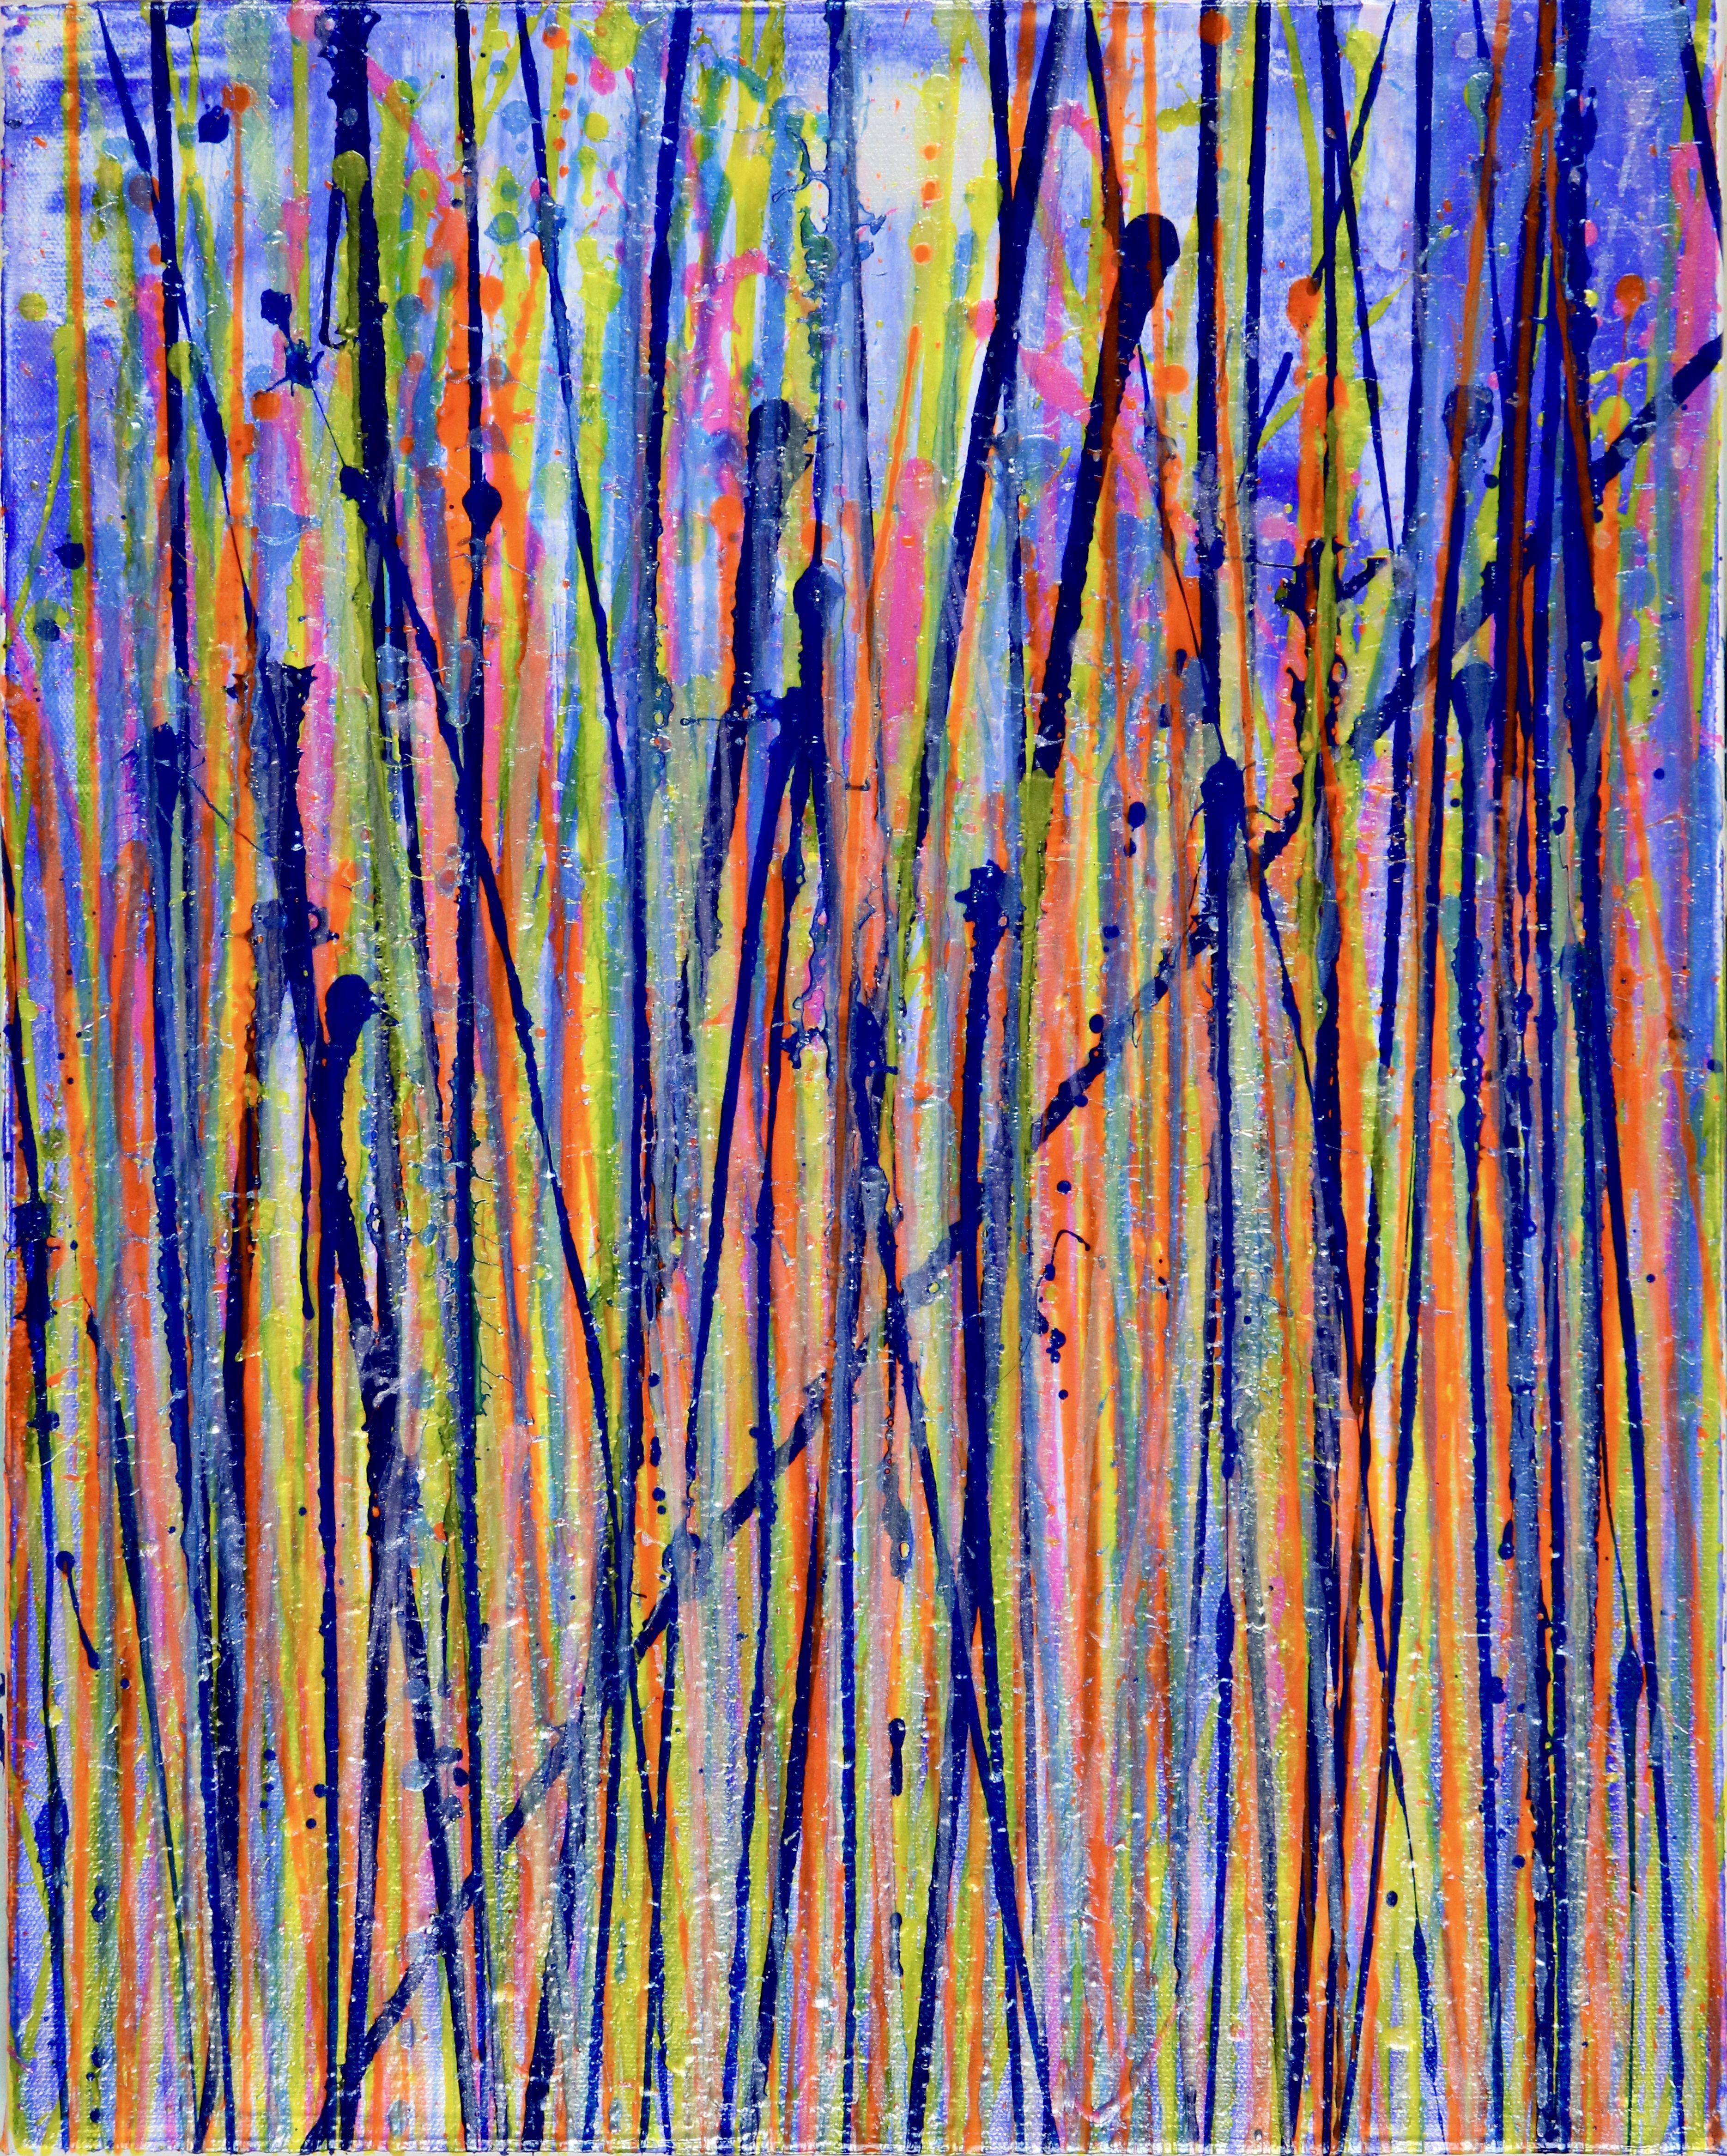 Drei Leinwände mit tiefem Rand (Galerieprofil), jeweils 16 B x 20 H x 1,5 Zoll.    Ausdrucksstarke moderne abstrakte, mutige voller Leben, Glanz und Schimmer! inspiriert von der Natur, viele durchscheinende Farben kombiniert mit Glimmerpartikeln.